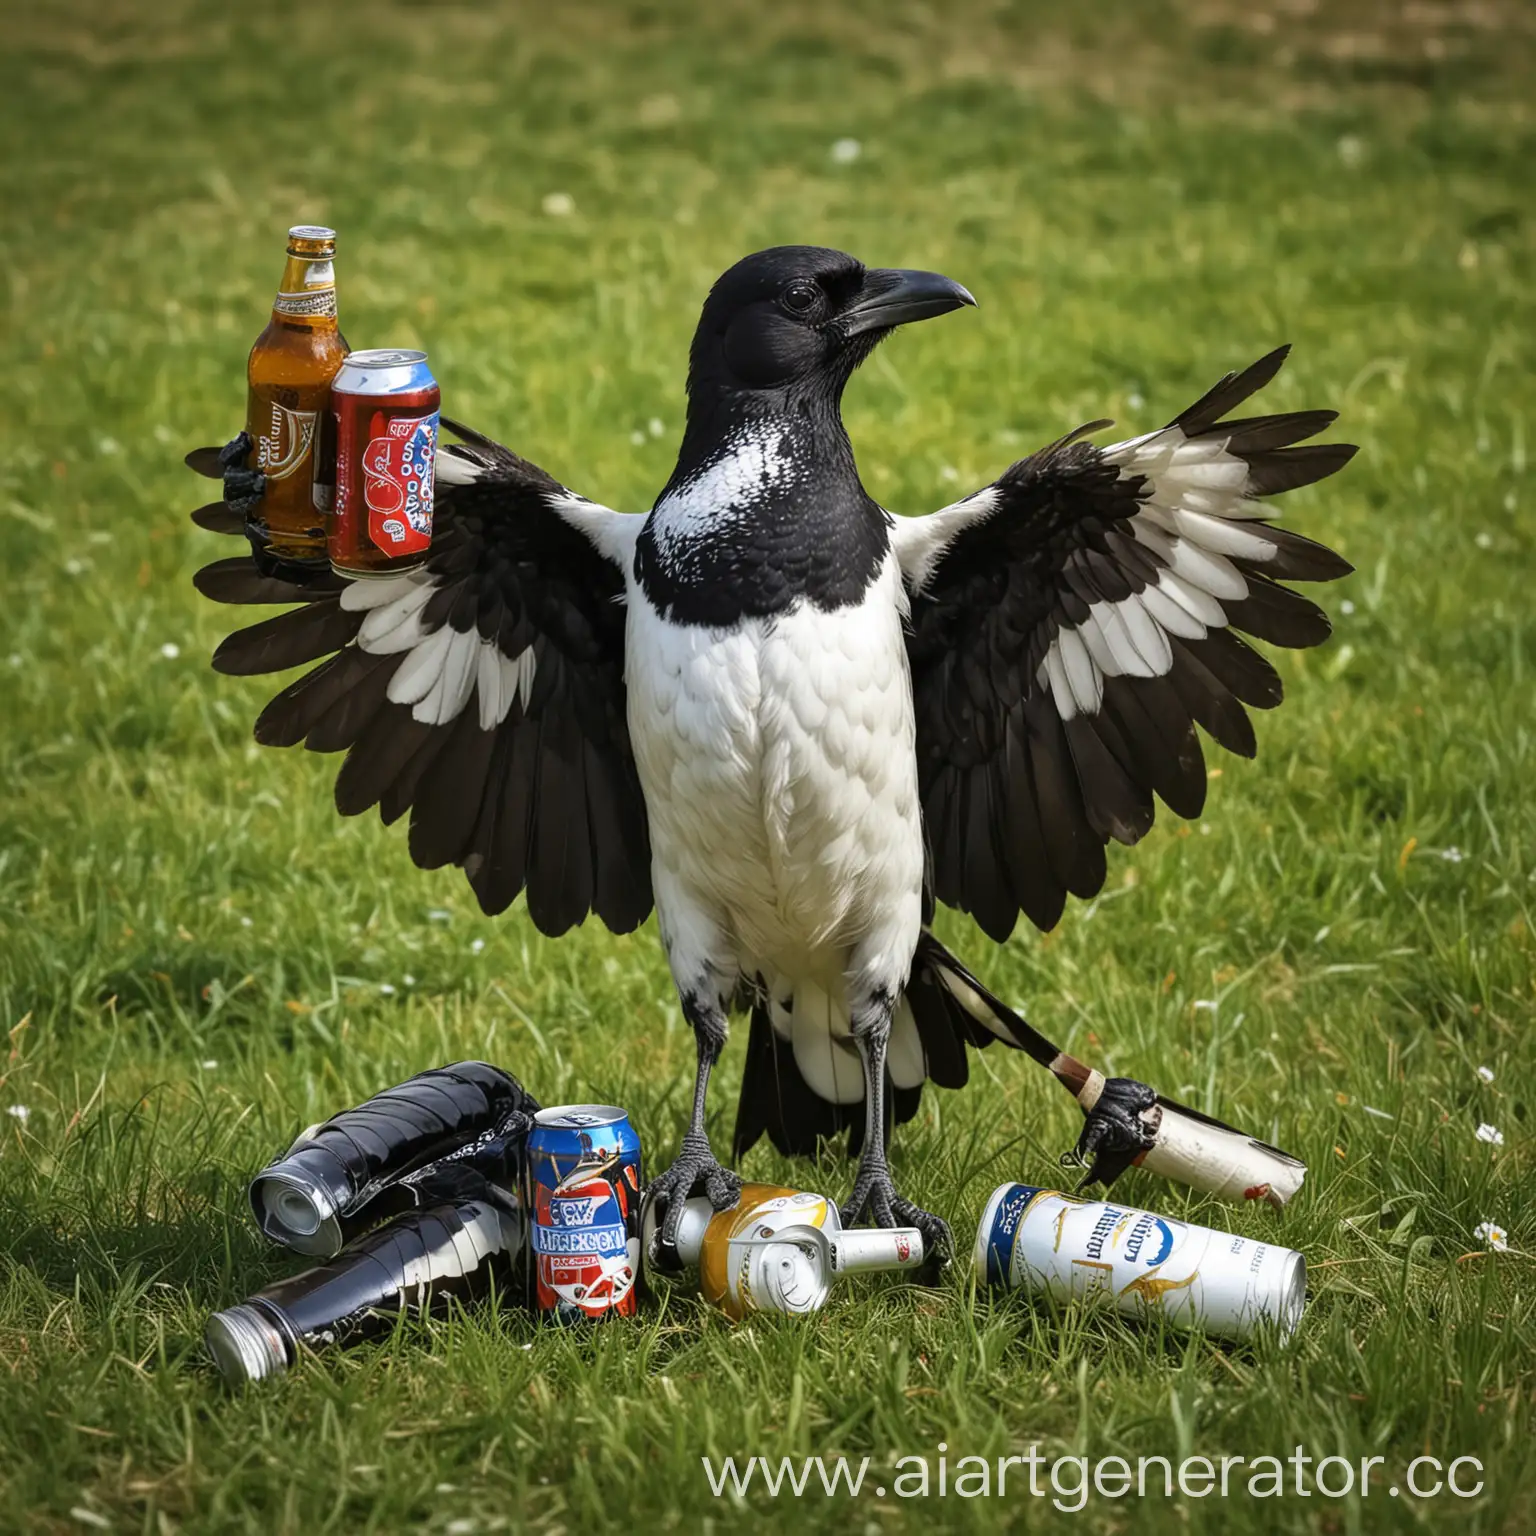 смешная пьяная сорока сидит на траве, под крылом держит банку пива, обнимает бутылку
